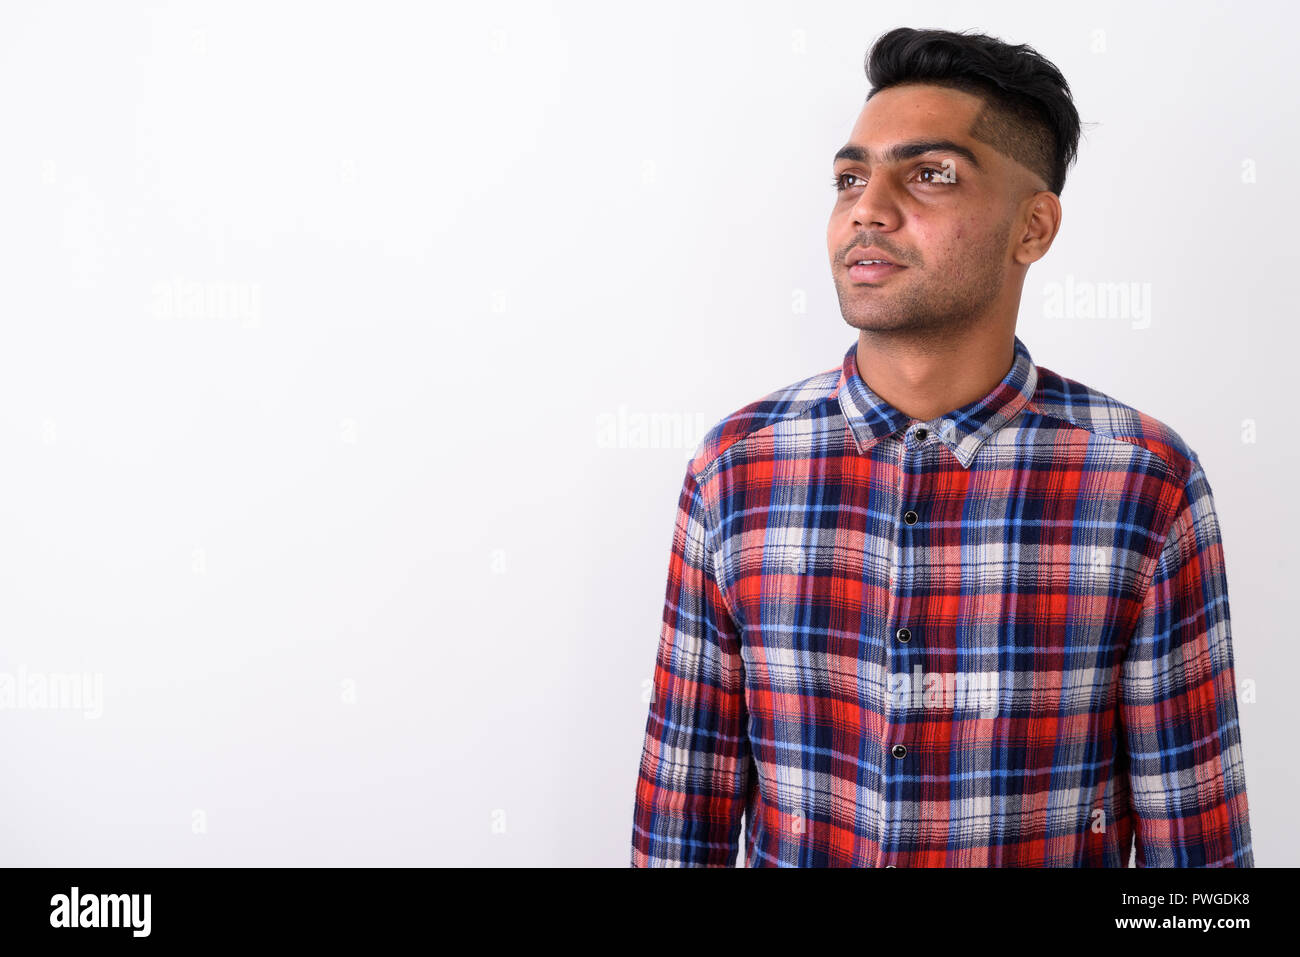 Junge indische Mann mit kariertem Hemd gegen Weiße backgroun Stockfoto